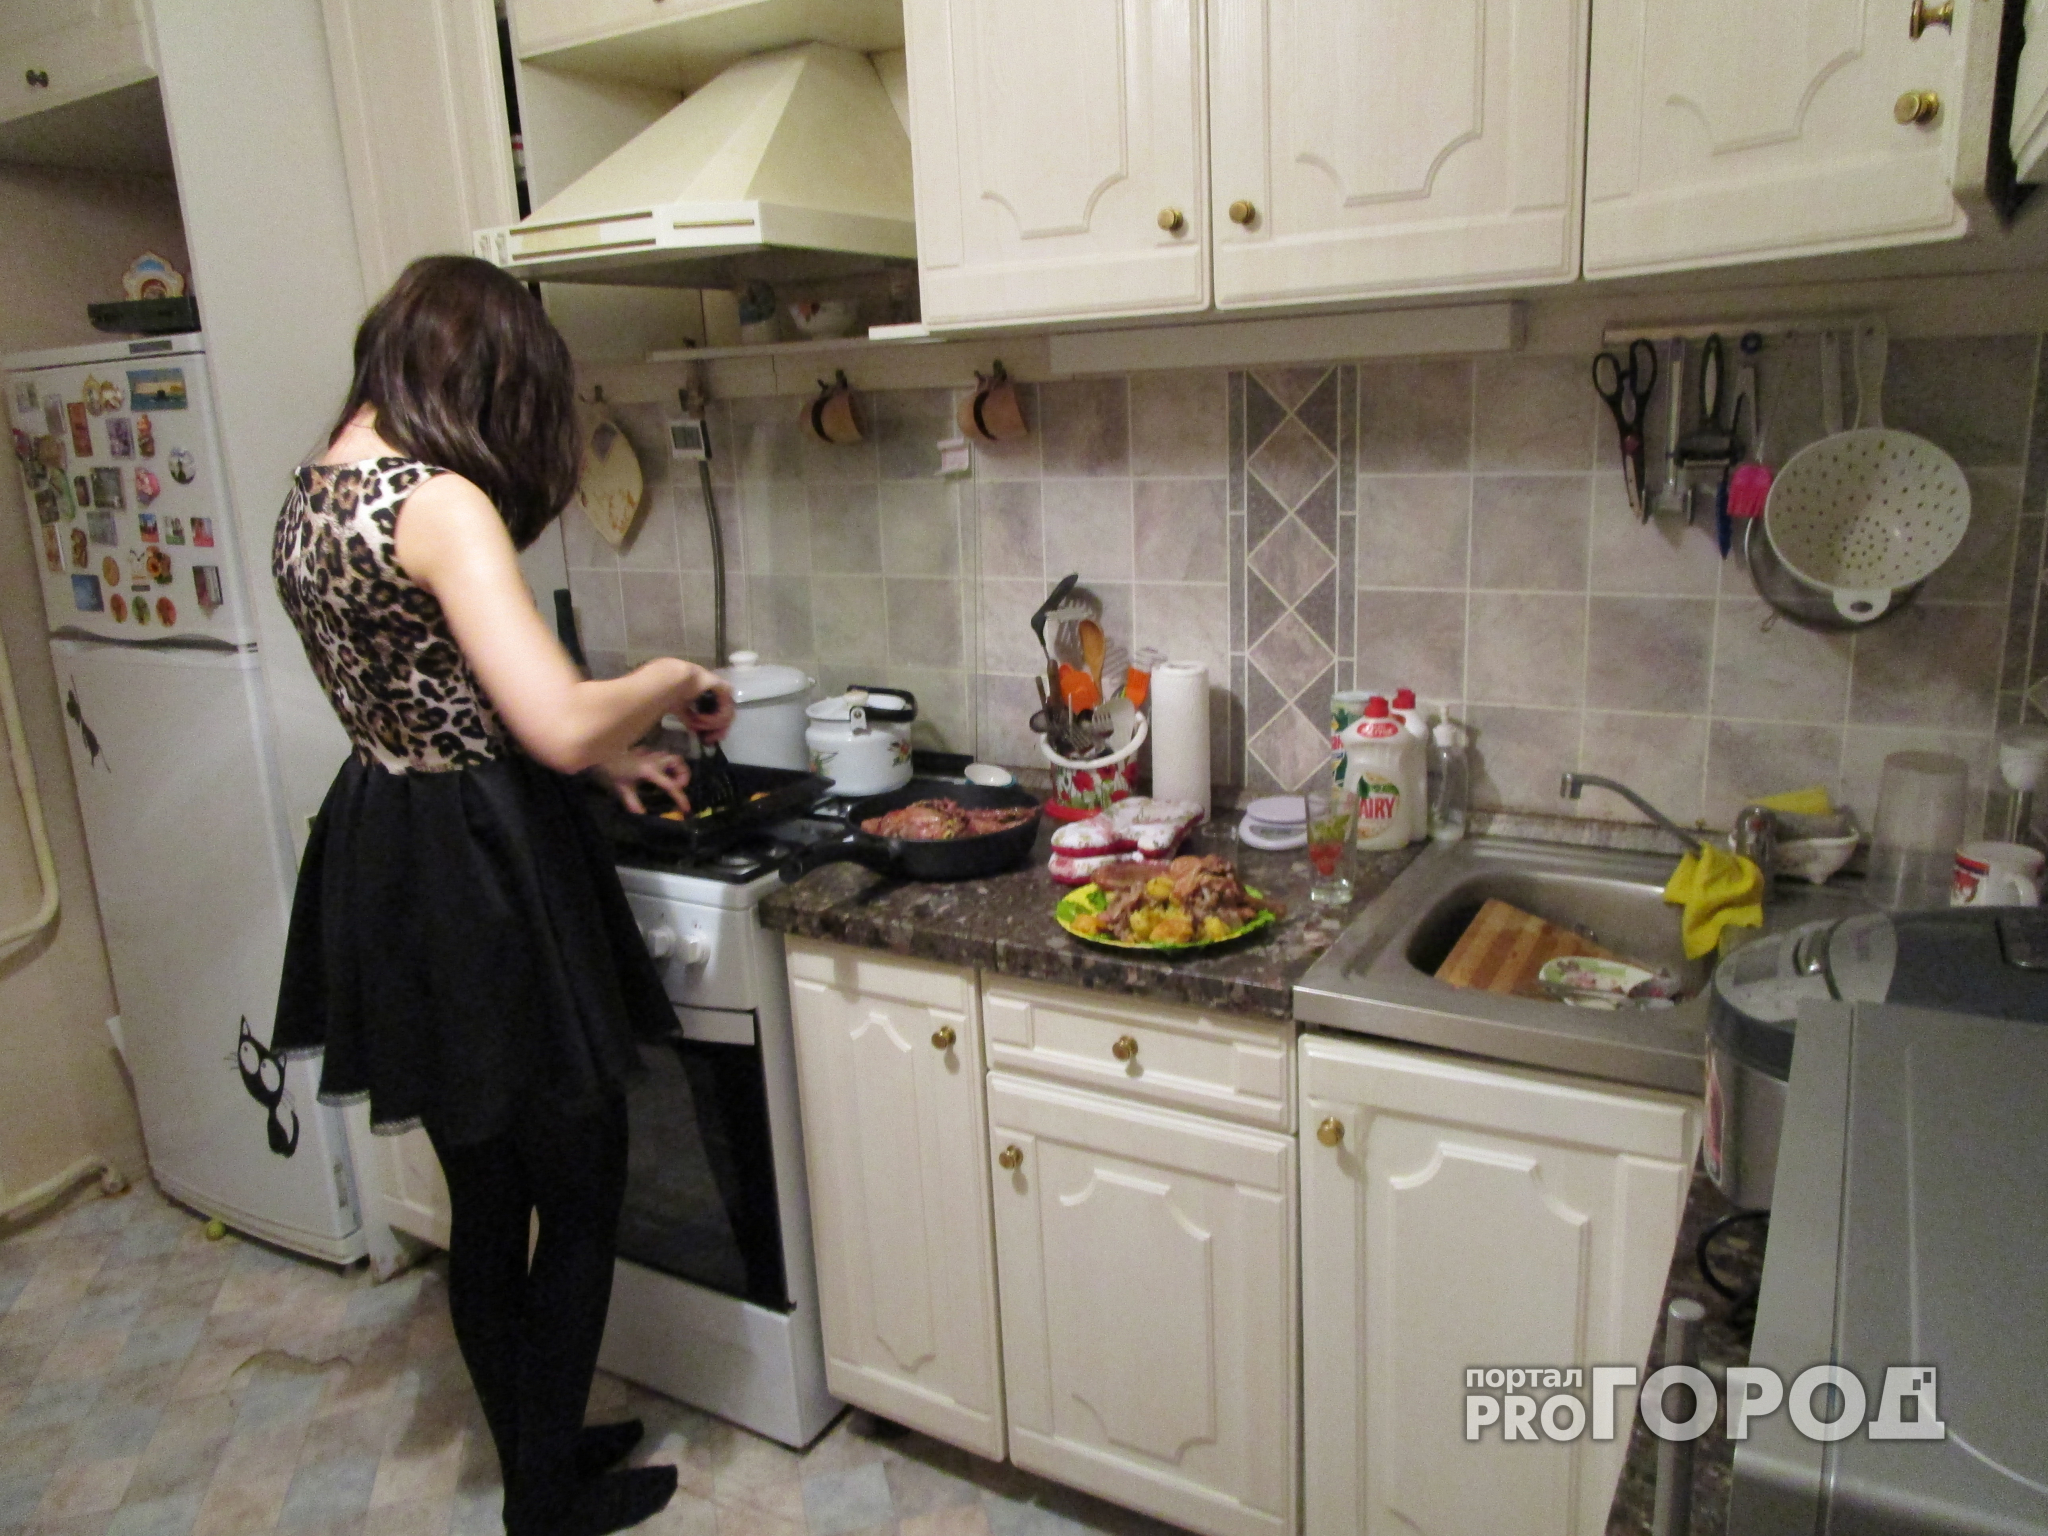 Слишком горячо: Кузнечанин ошпарил жену кипятком во время ссоры